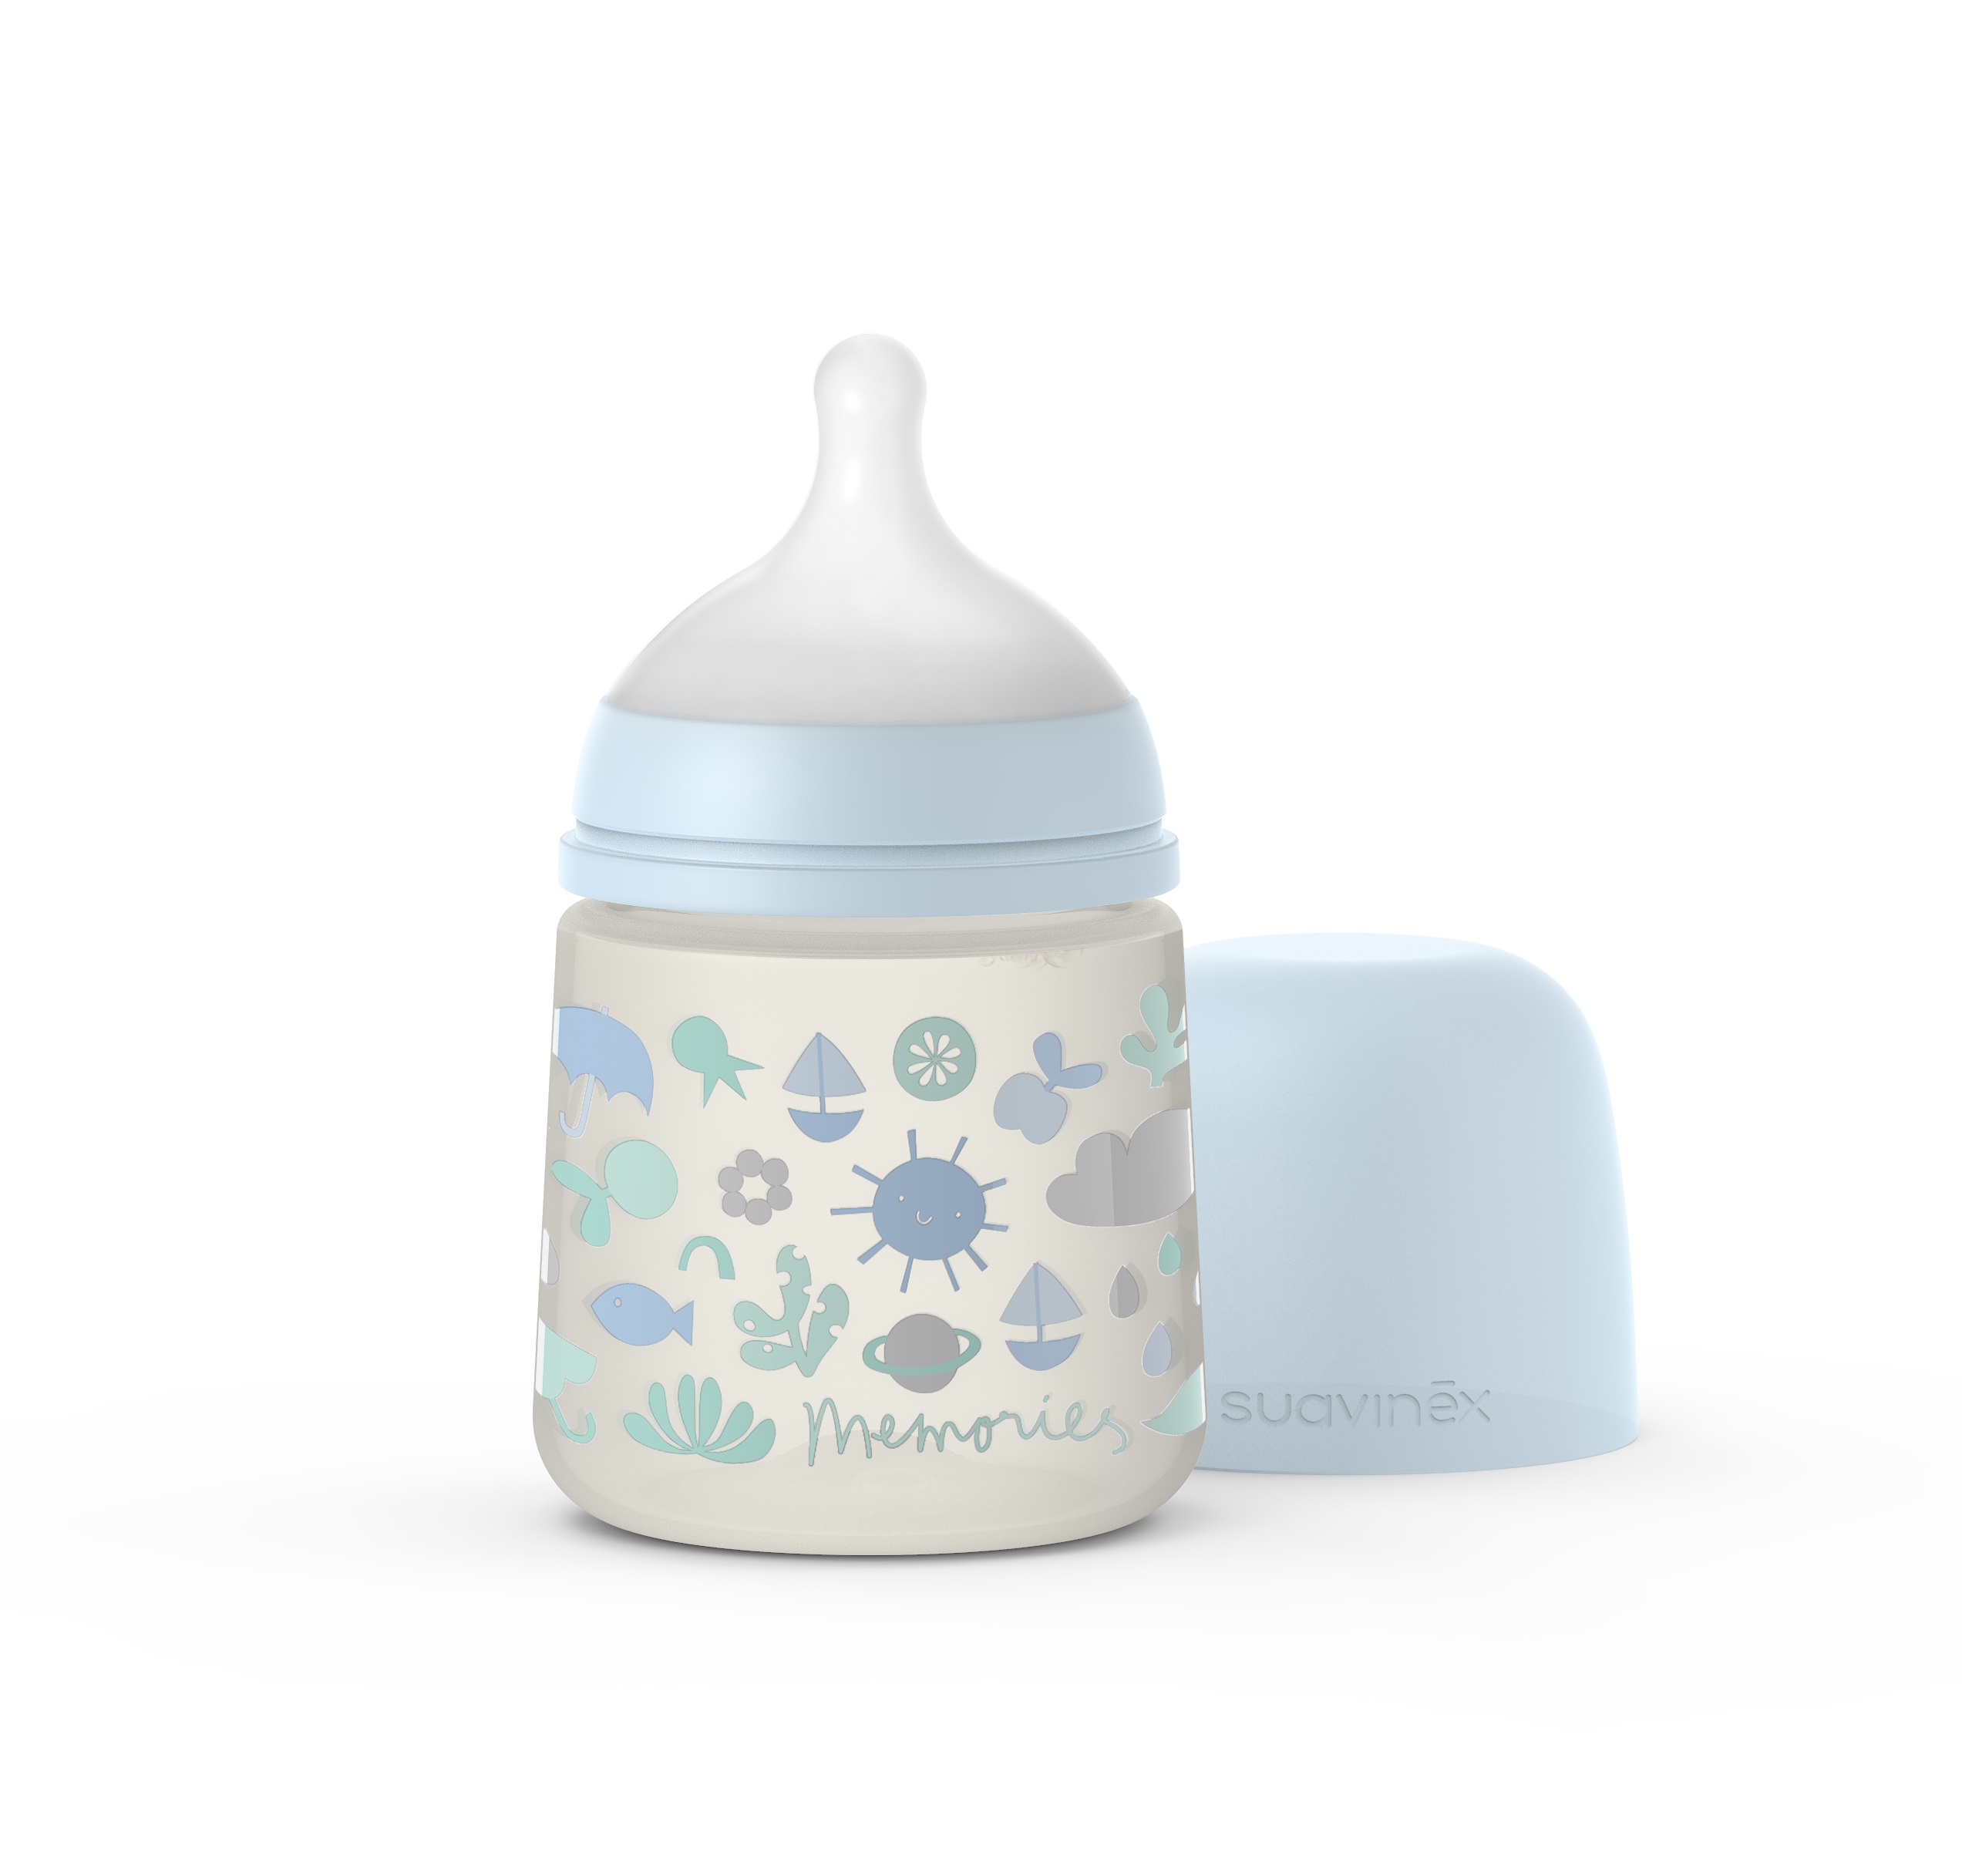 בקבוק לתינוק 150 מל MEMORIES פיז' חדש - כחול סגל בייבי סובינקס